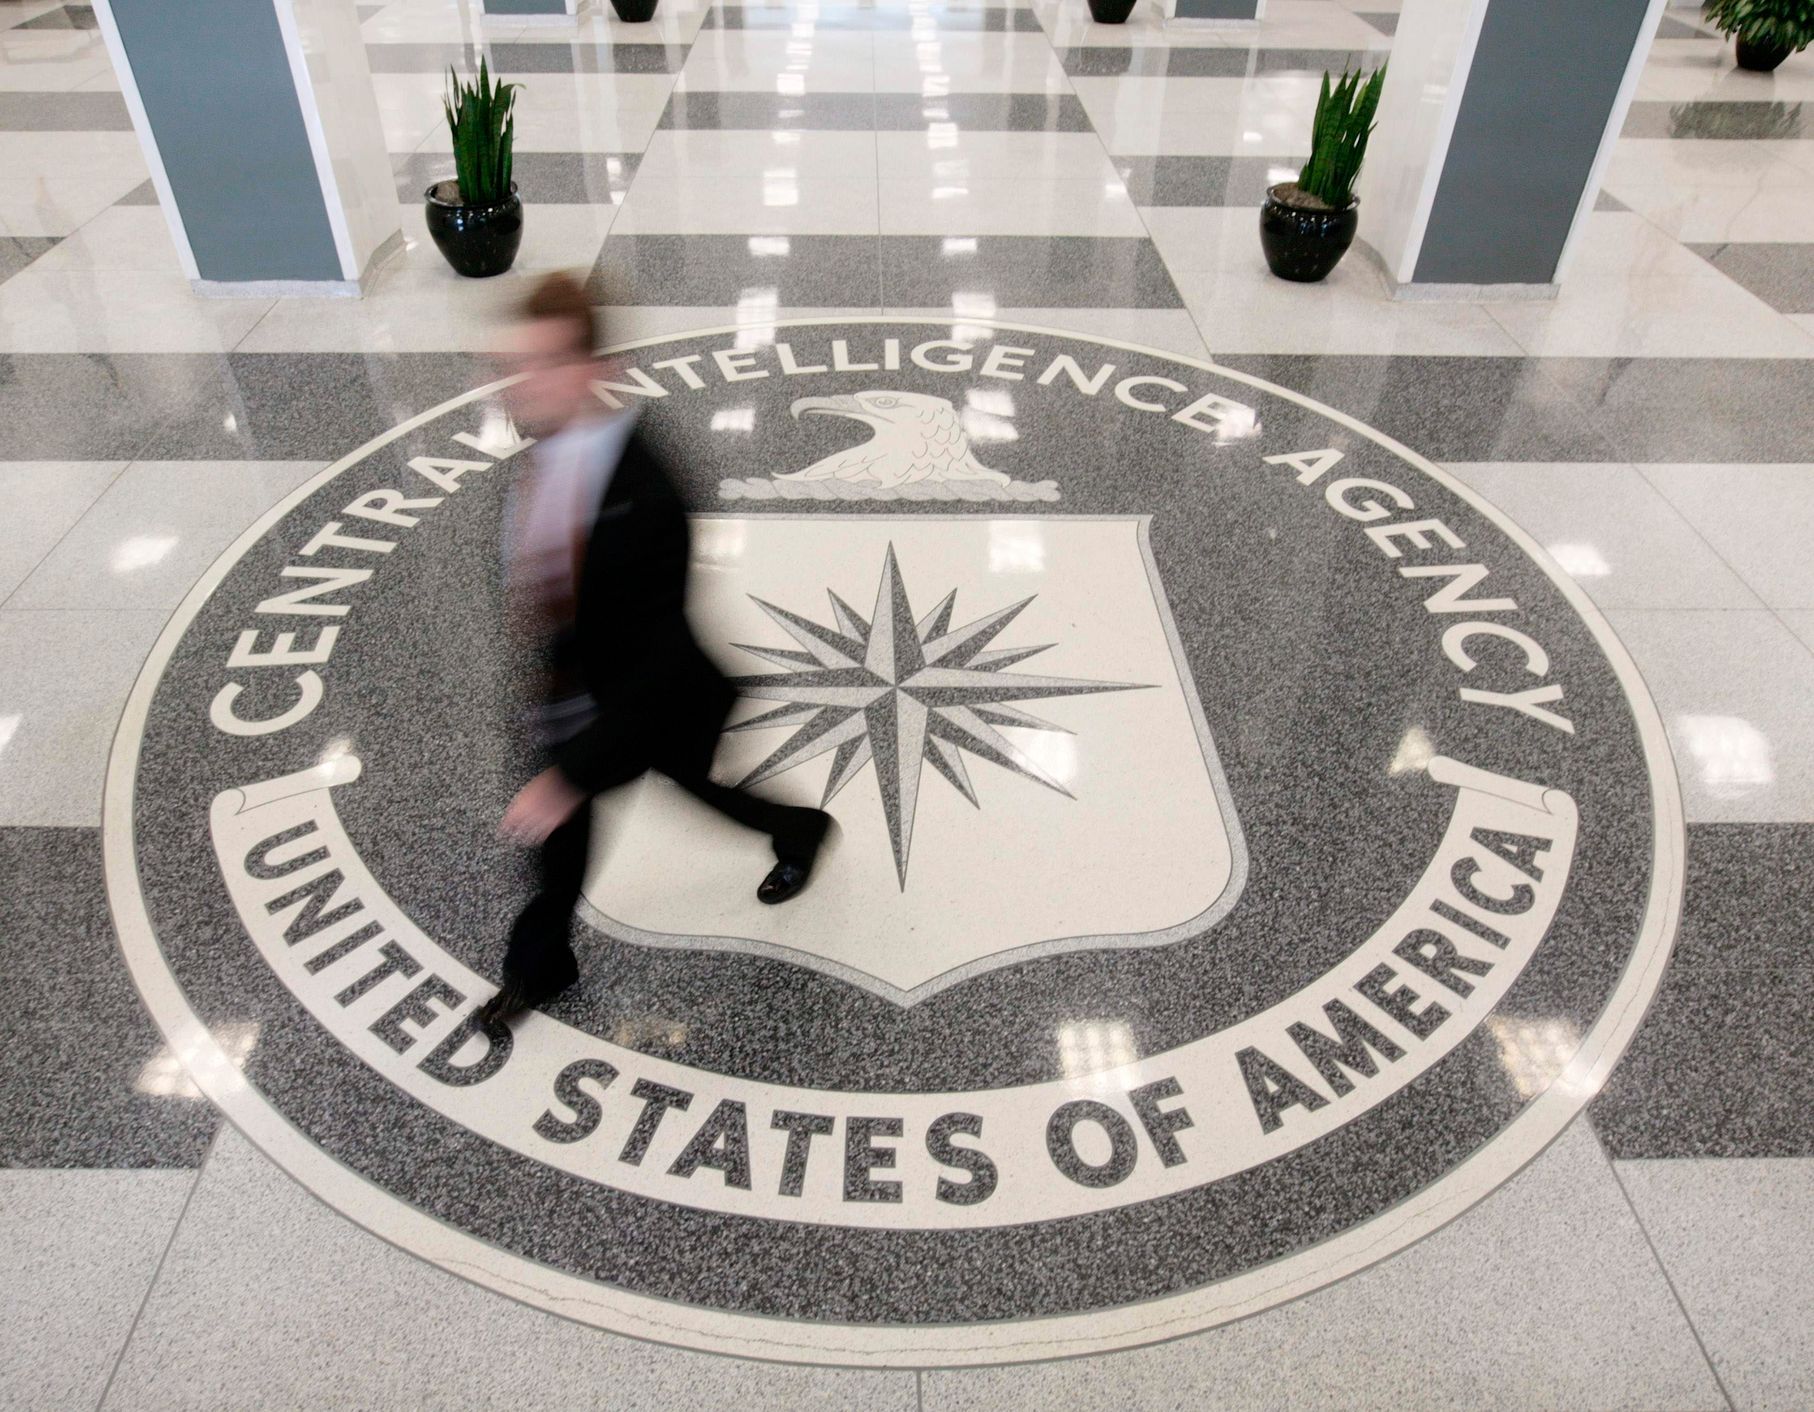 Ve Spojených státech byl zadržen bývalý agent CIA, přechovával tajné informace